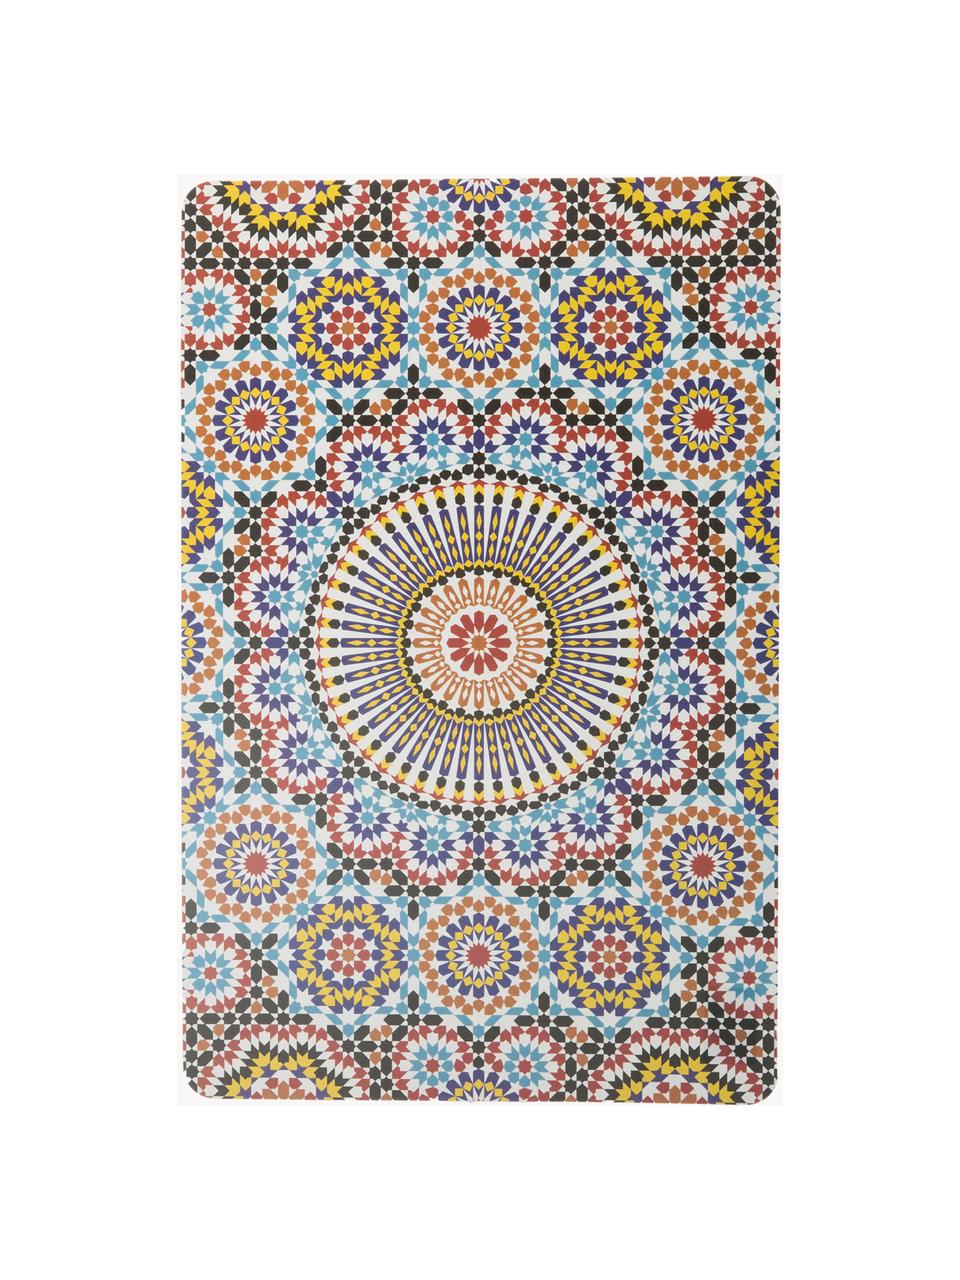 Beidseitig bedruckte Tischsets Marrakesch Doubleface, 6er-Set, Kunststoff, Bunt, B 30 x L 45 cm